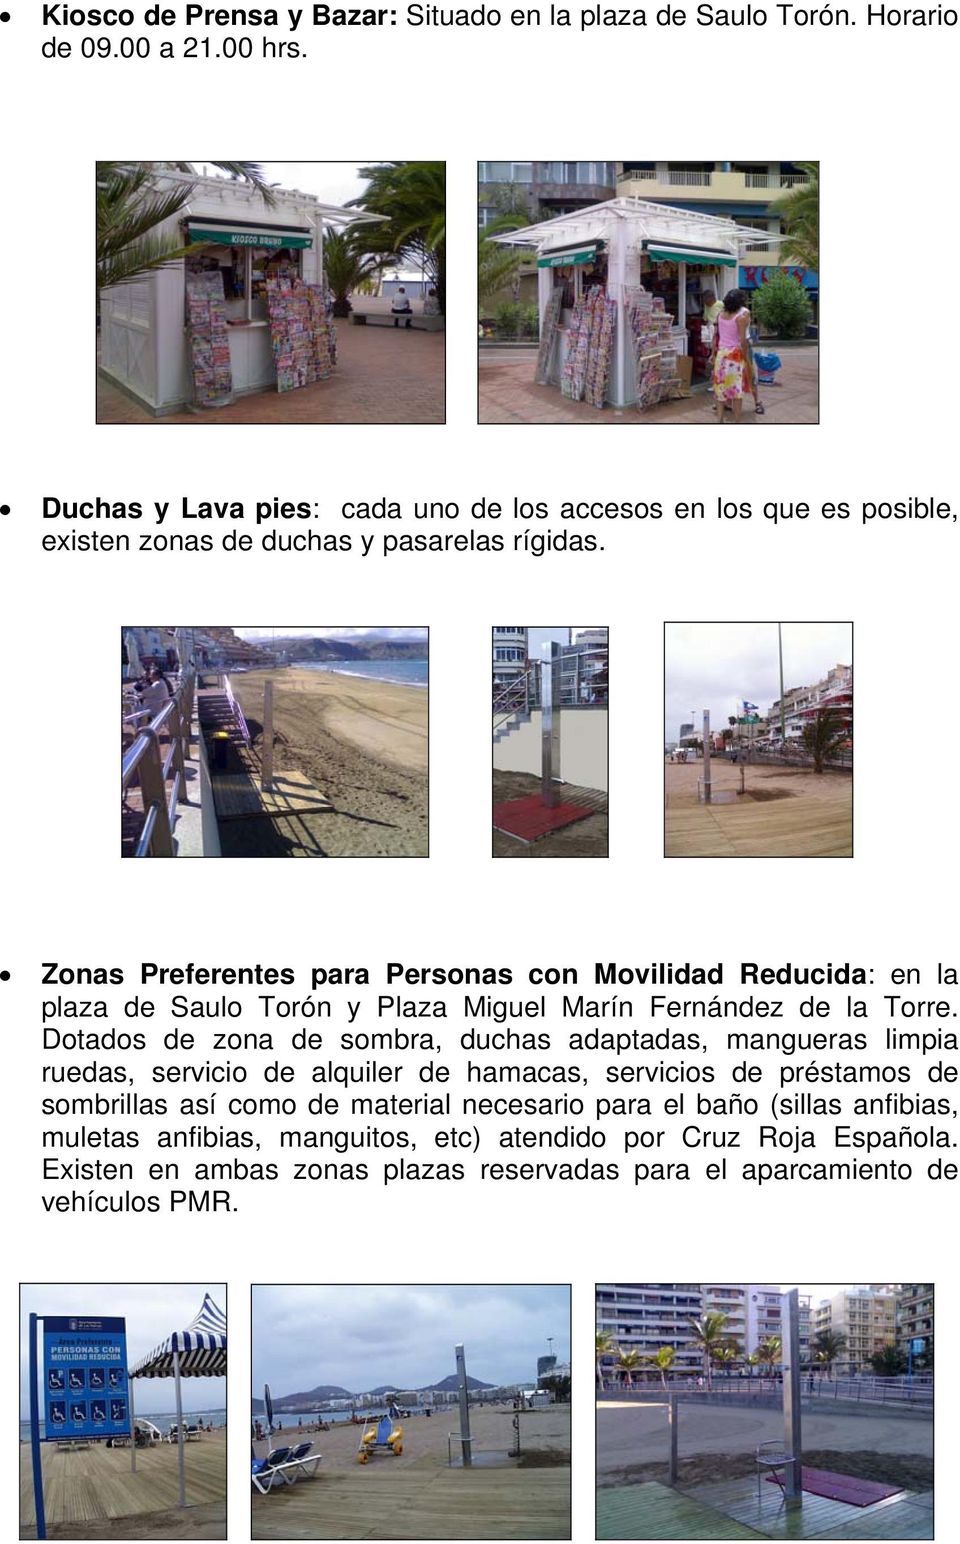 Zonas Preferentes para Personas con Movilidad Reducida: en la plaza de Saulo Torón y Plaza Miguel Marín Fernández de la Torre.